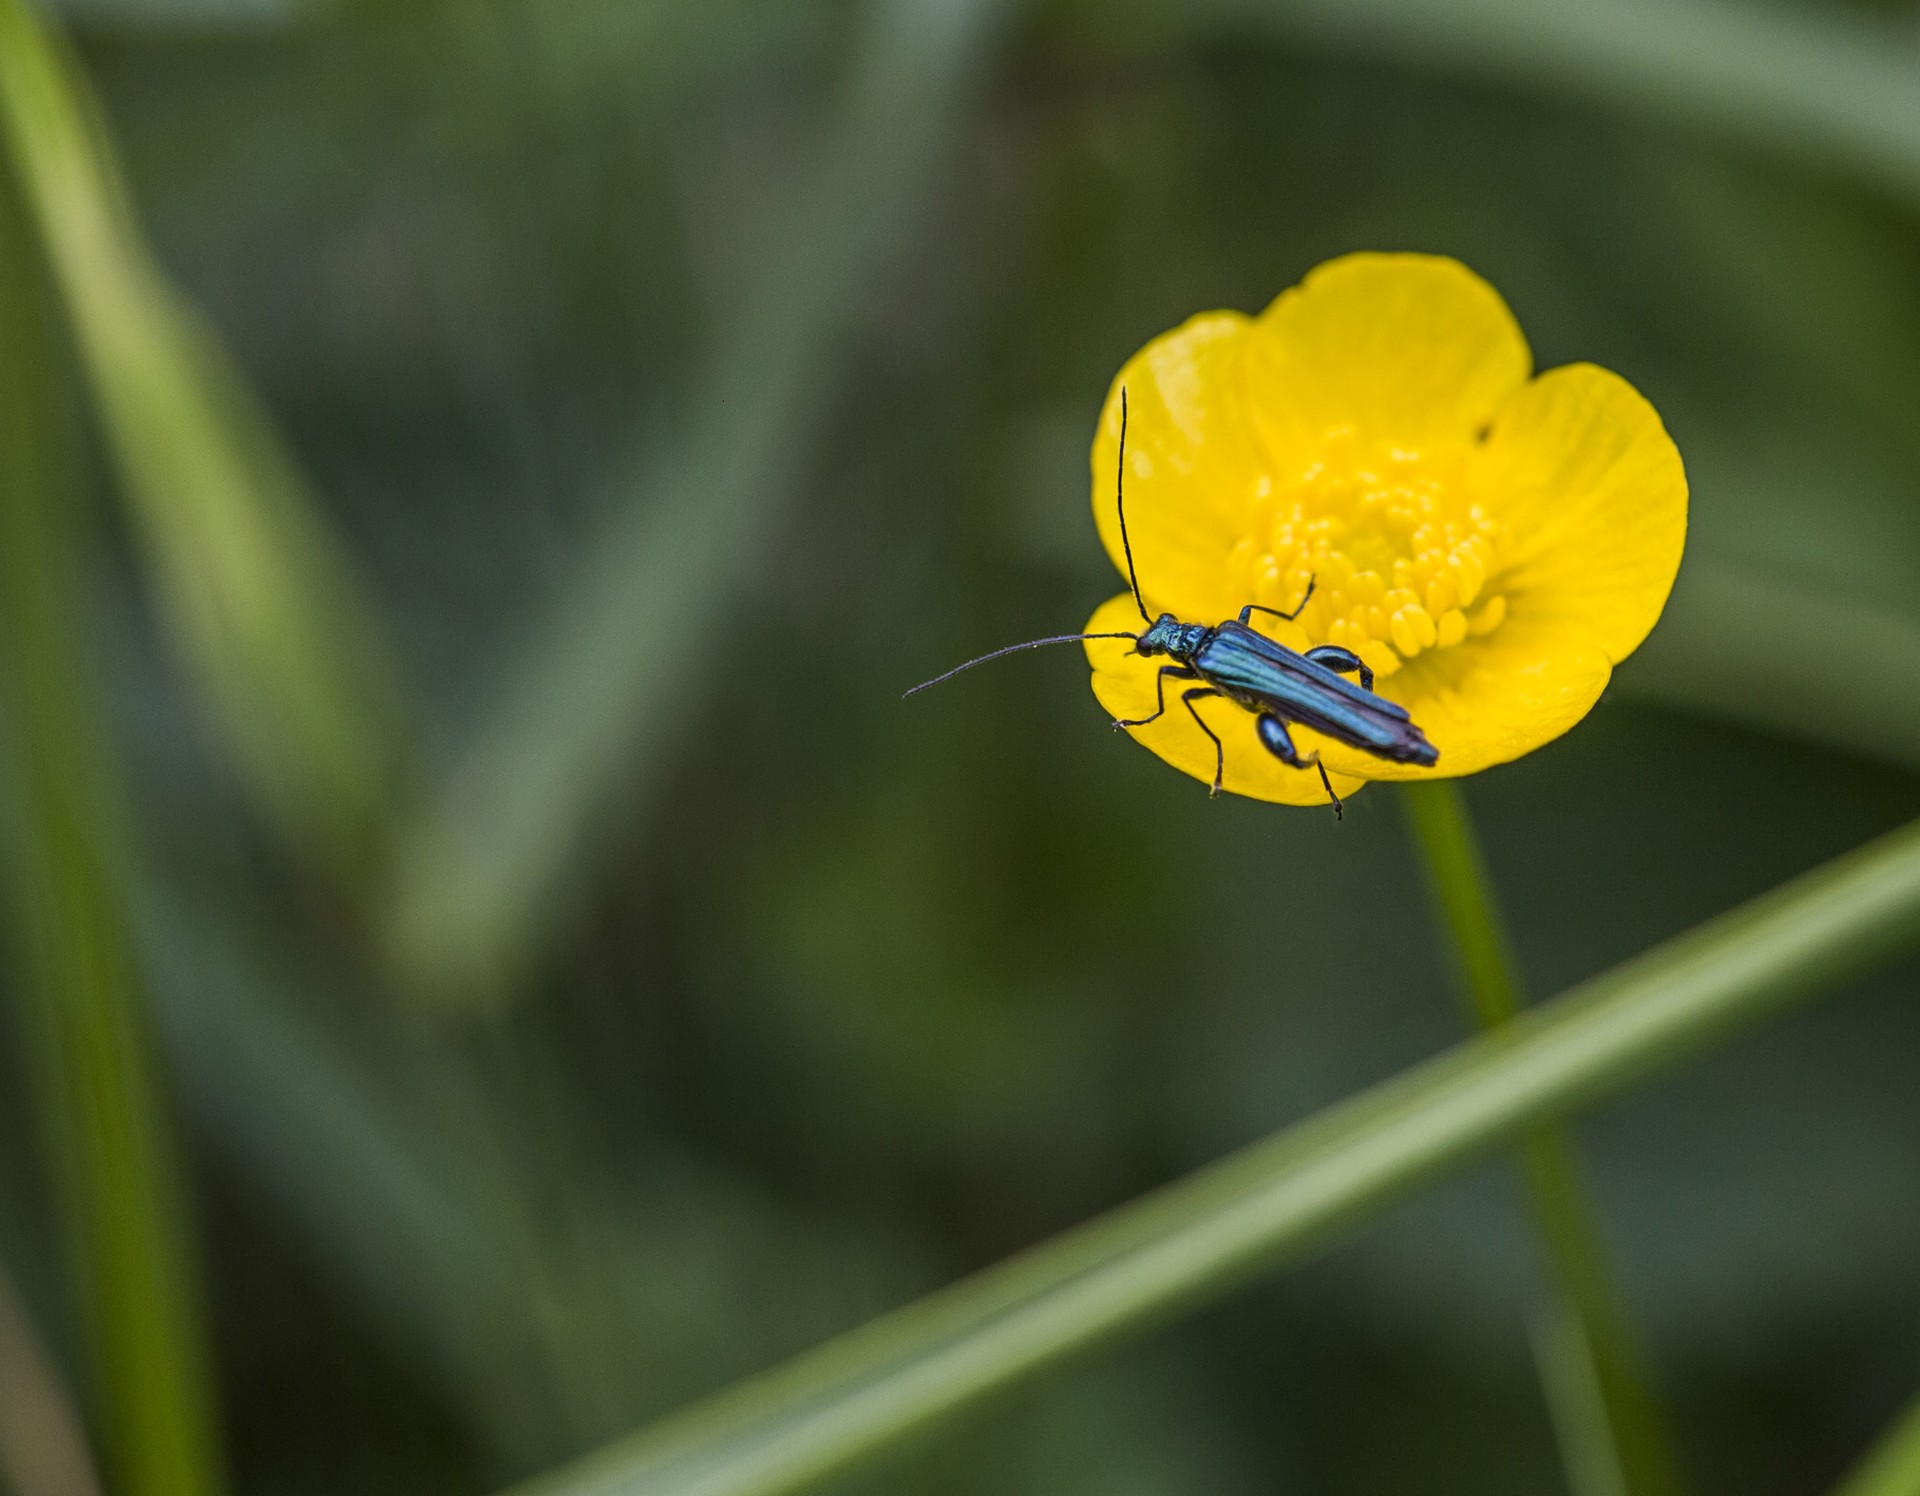 Bläulich-grün schimmernder, schmaler Käfer auf einer gelben Blüte.